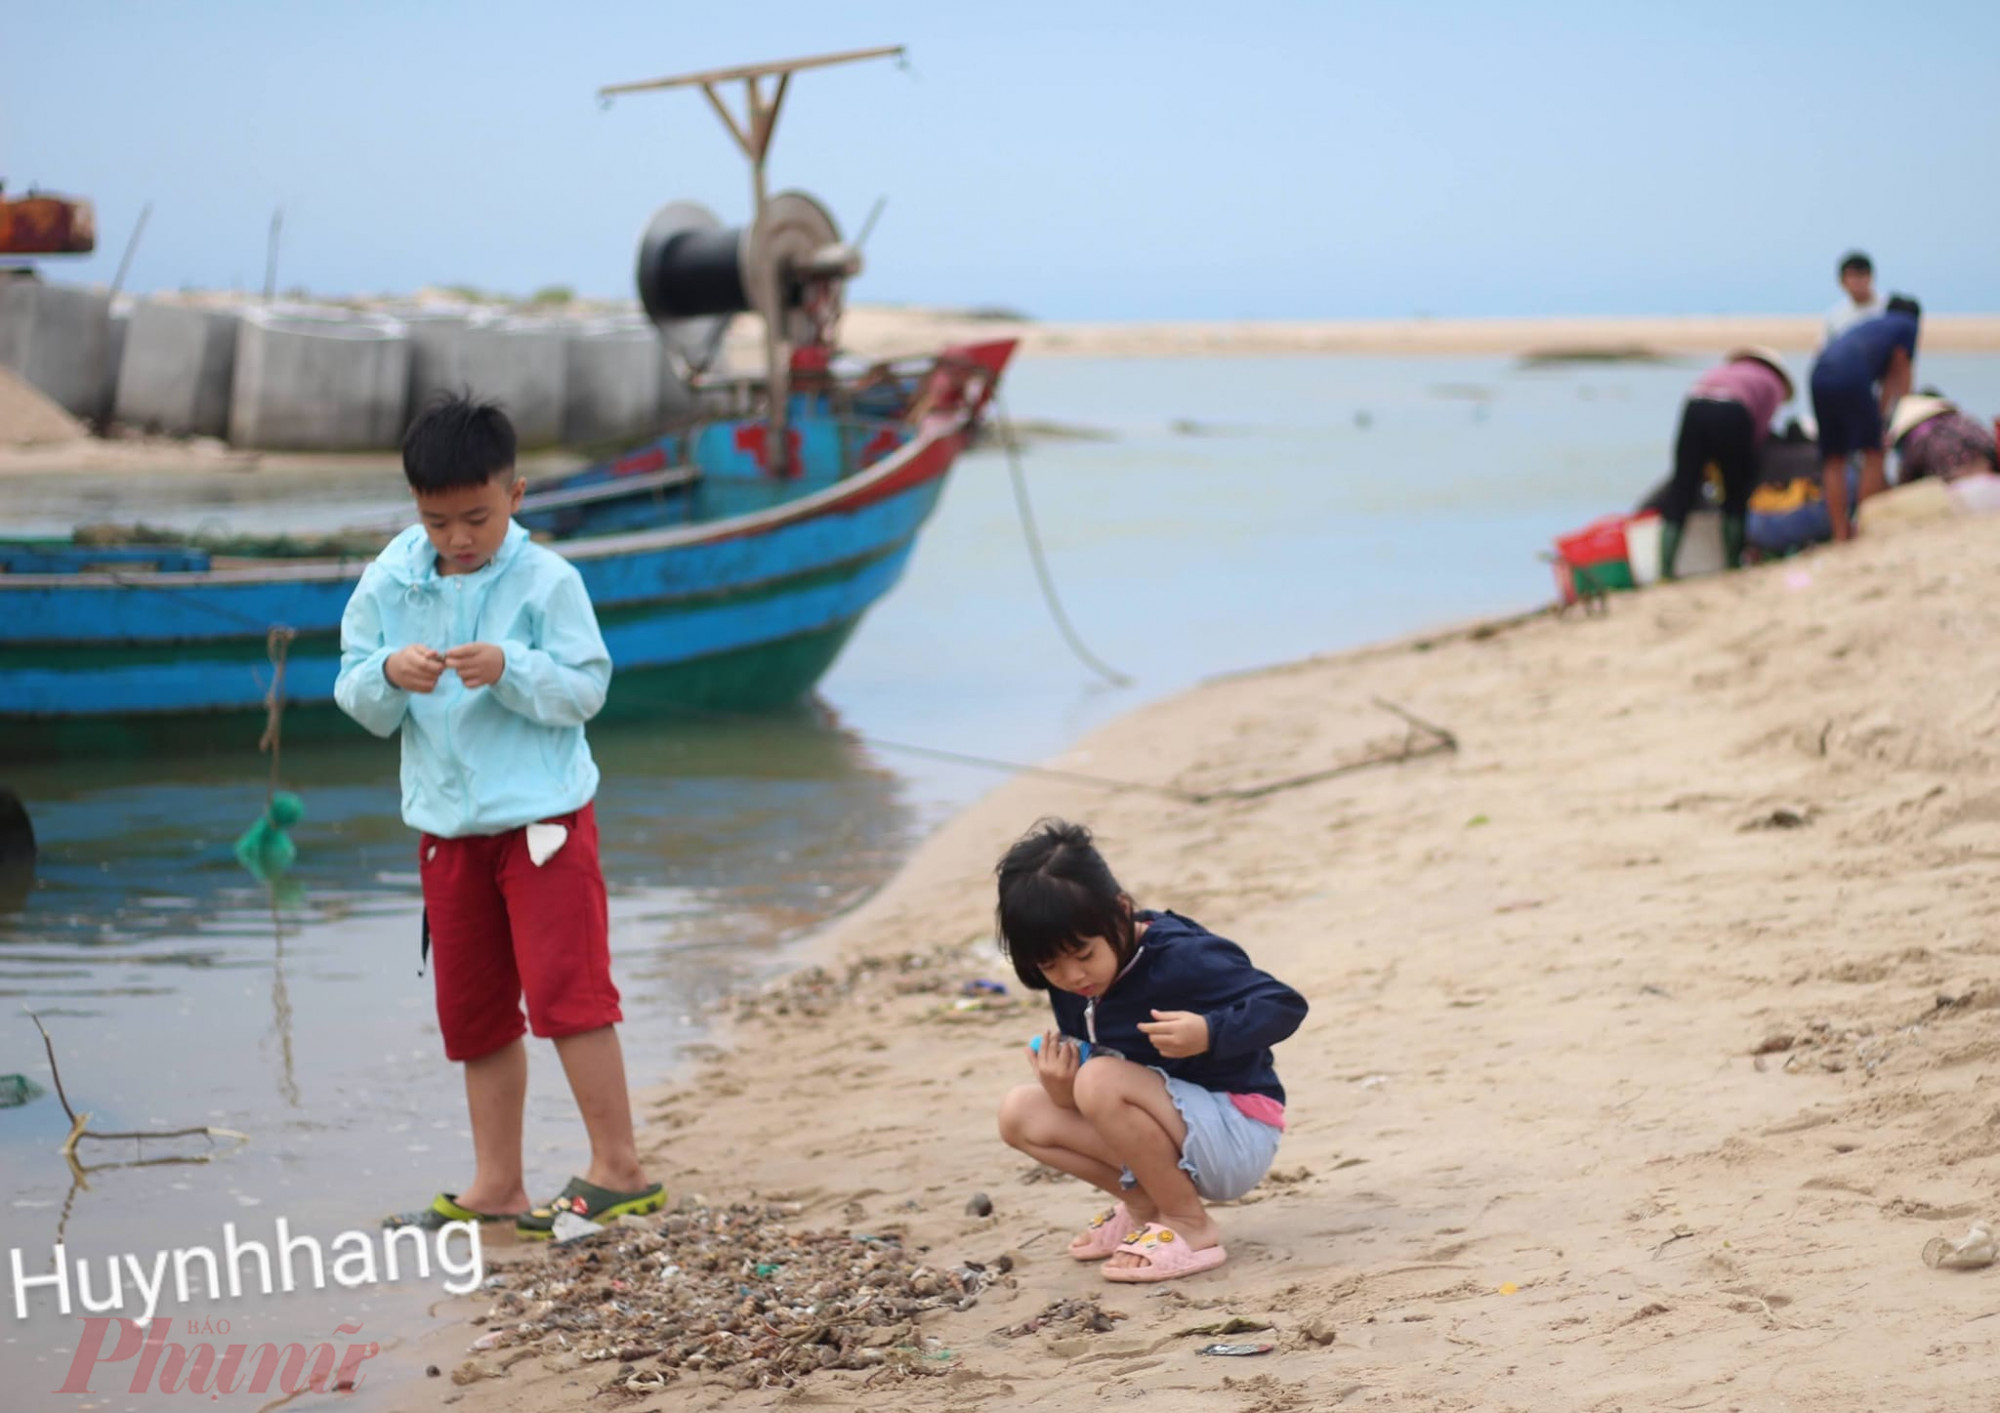 Ăn gì: Buổi sáng, bãi biển làng chài Thắng Hải có cảng cá - nơi ngư dân đánh bắt về và bán cho người thu gom hải sản. Bạn có thể dậy sớm, tham quan cảng cá, mua hải sản hay đi chợ Thắng Hải (cách cảng cá khoảng 2-2,5 km) để mua hải sản.